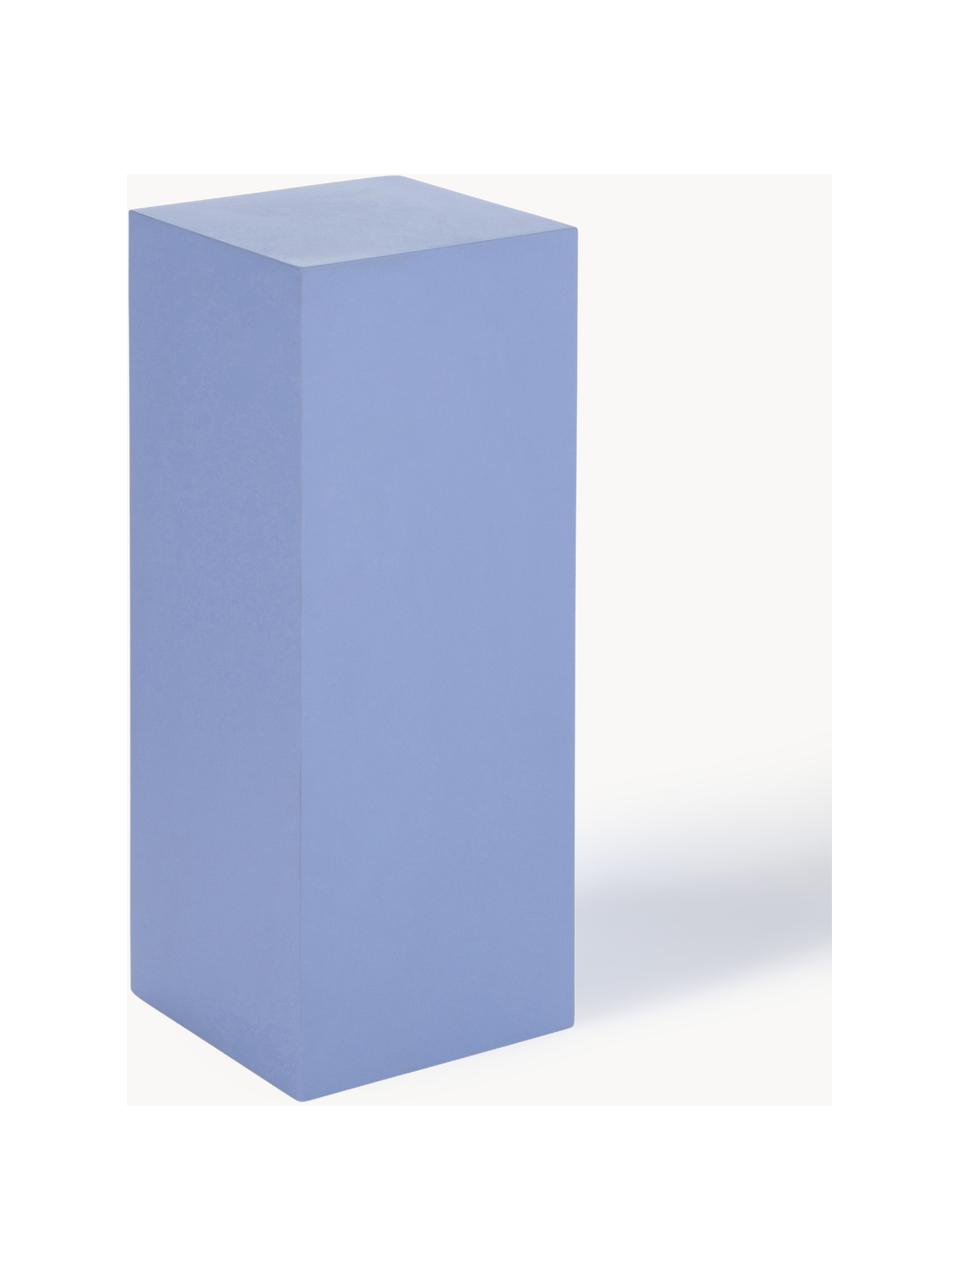 Sierzuil Smash, Vezelplaat met gemiddelde dichtheid (MDF), Blauw, B 20 cm x H 50 cm